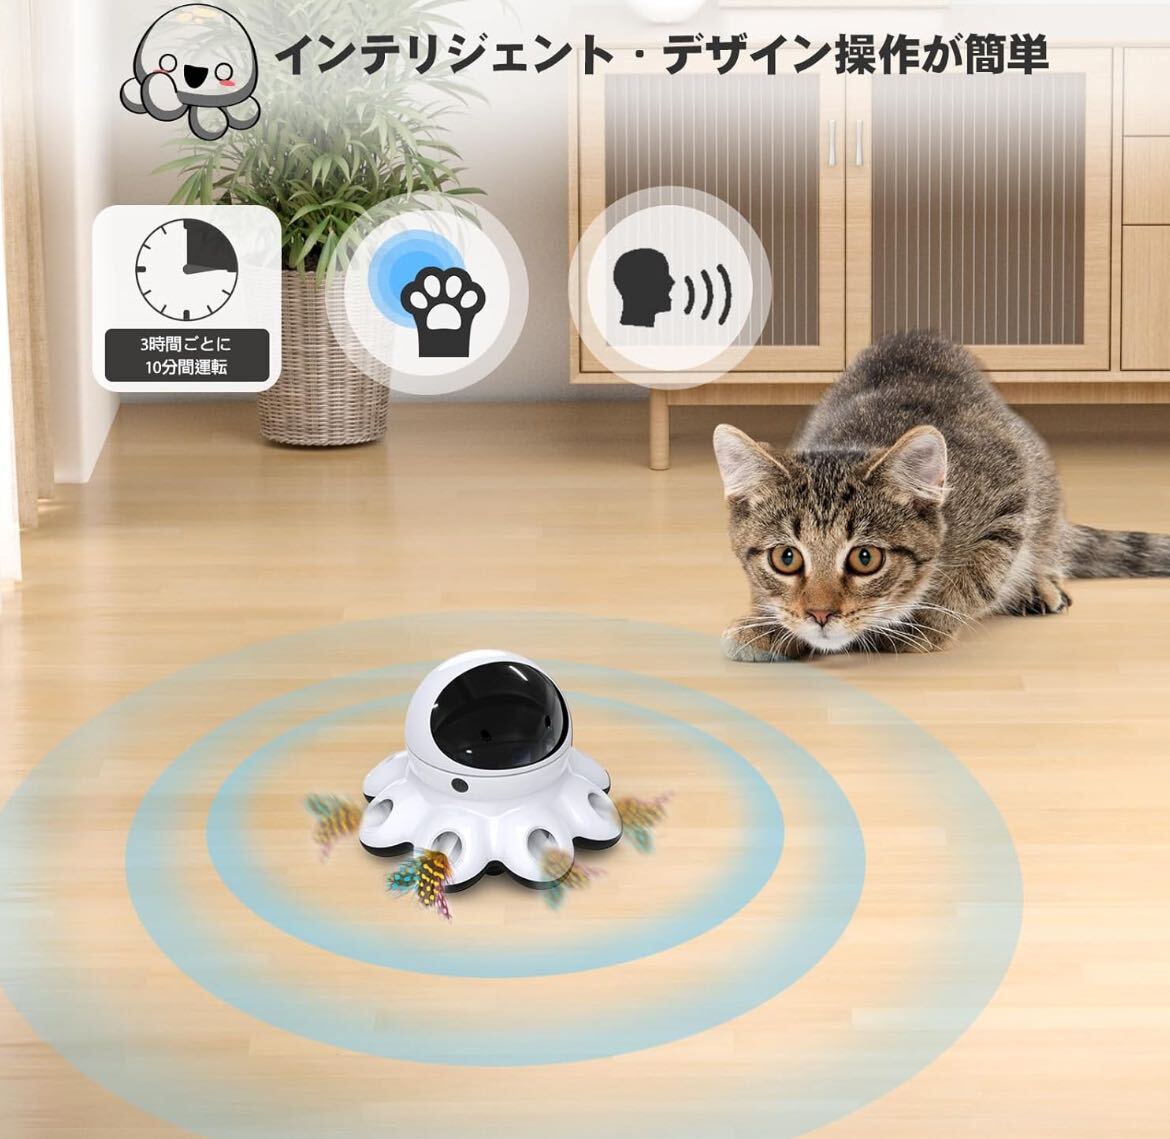  кошка игрушка электрический ORSDA 2-in-1 цельный автоматика вращение домашнее животное игрушка,8.. дыра. .... двигаться перо ., love кошка. игрушка mogla выбивалка все кошка вид . соответствующий 